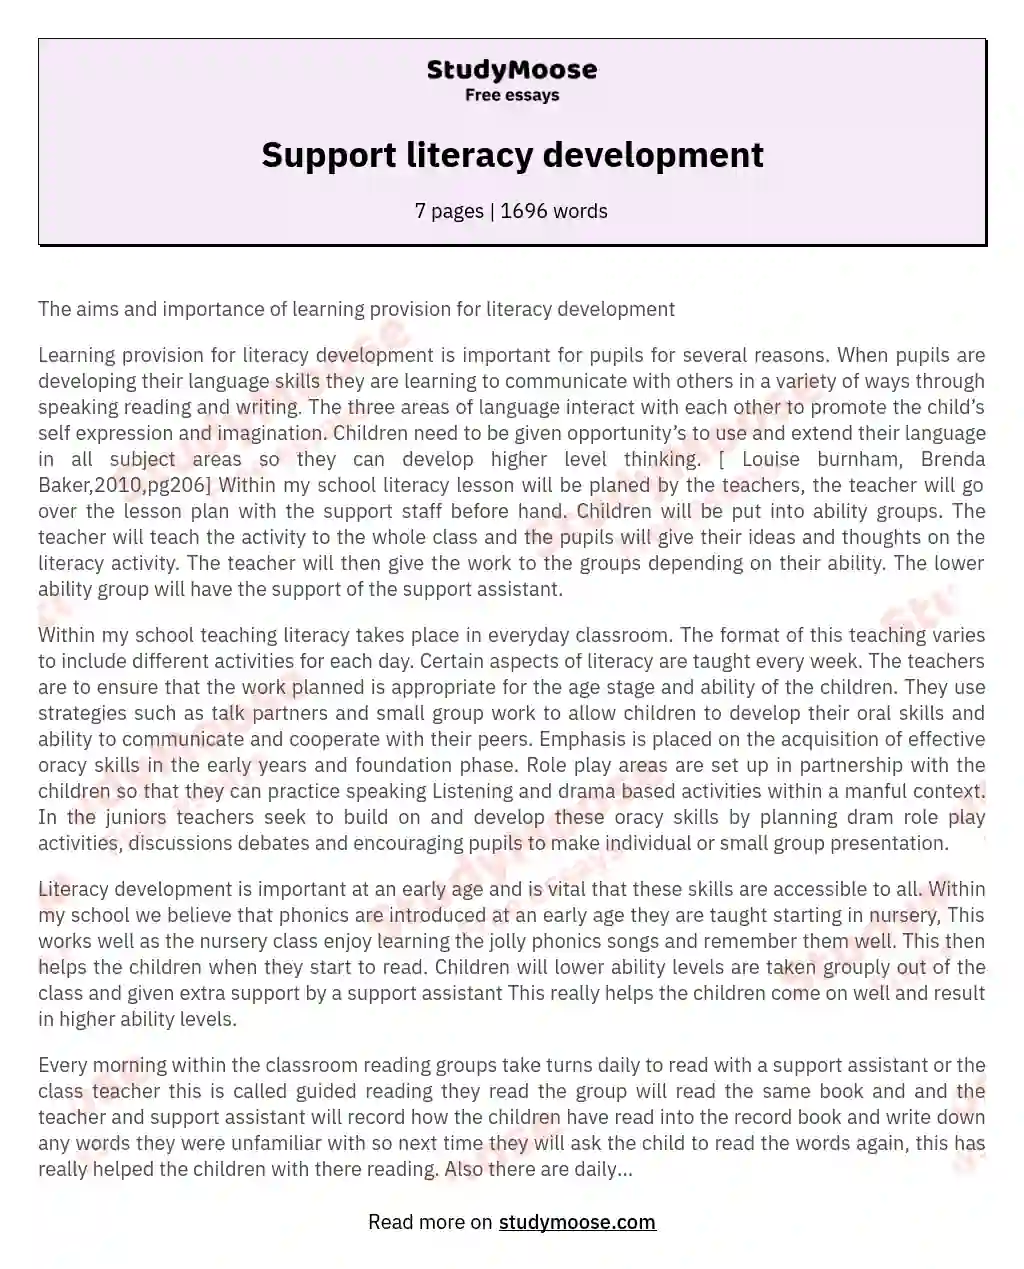 Support literacy development essay